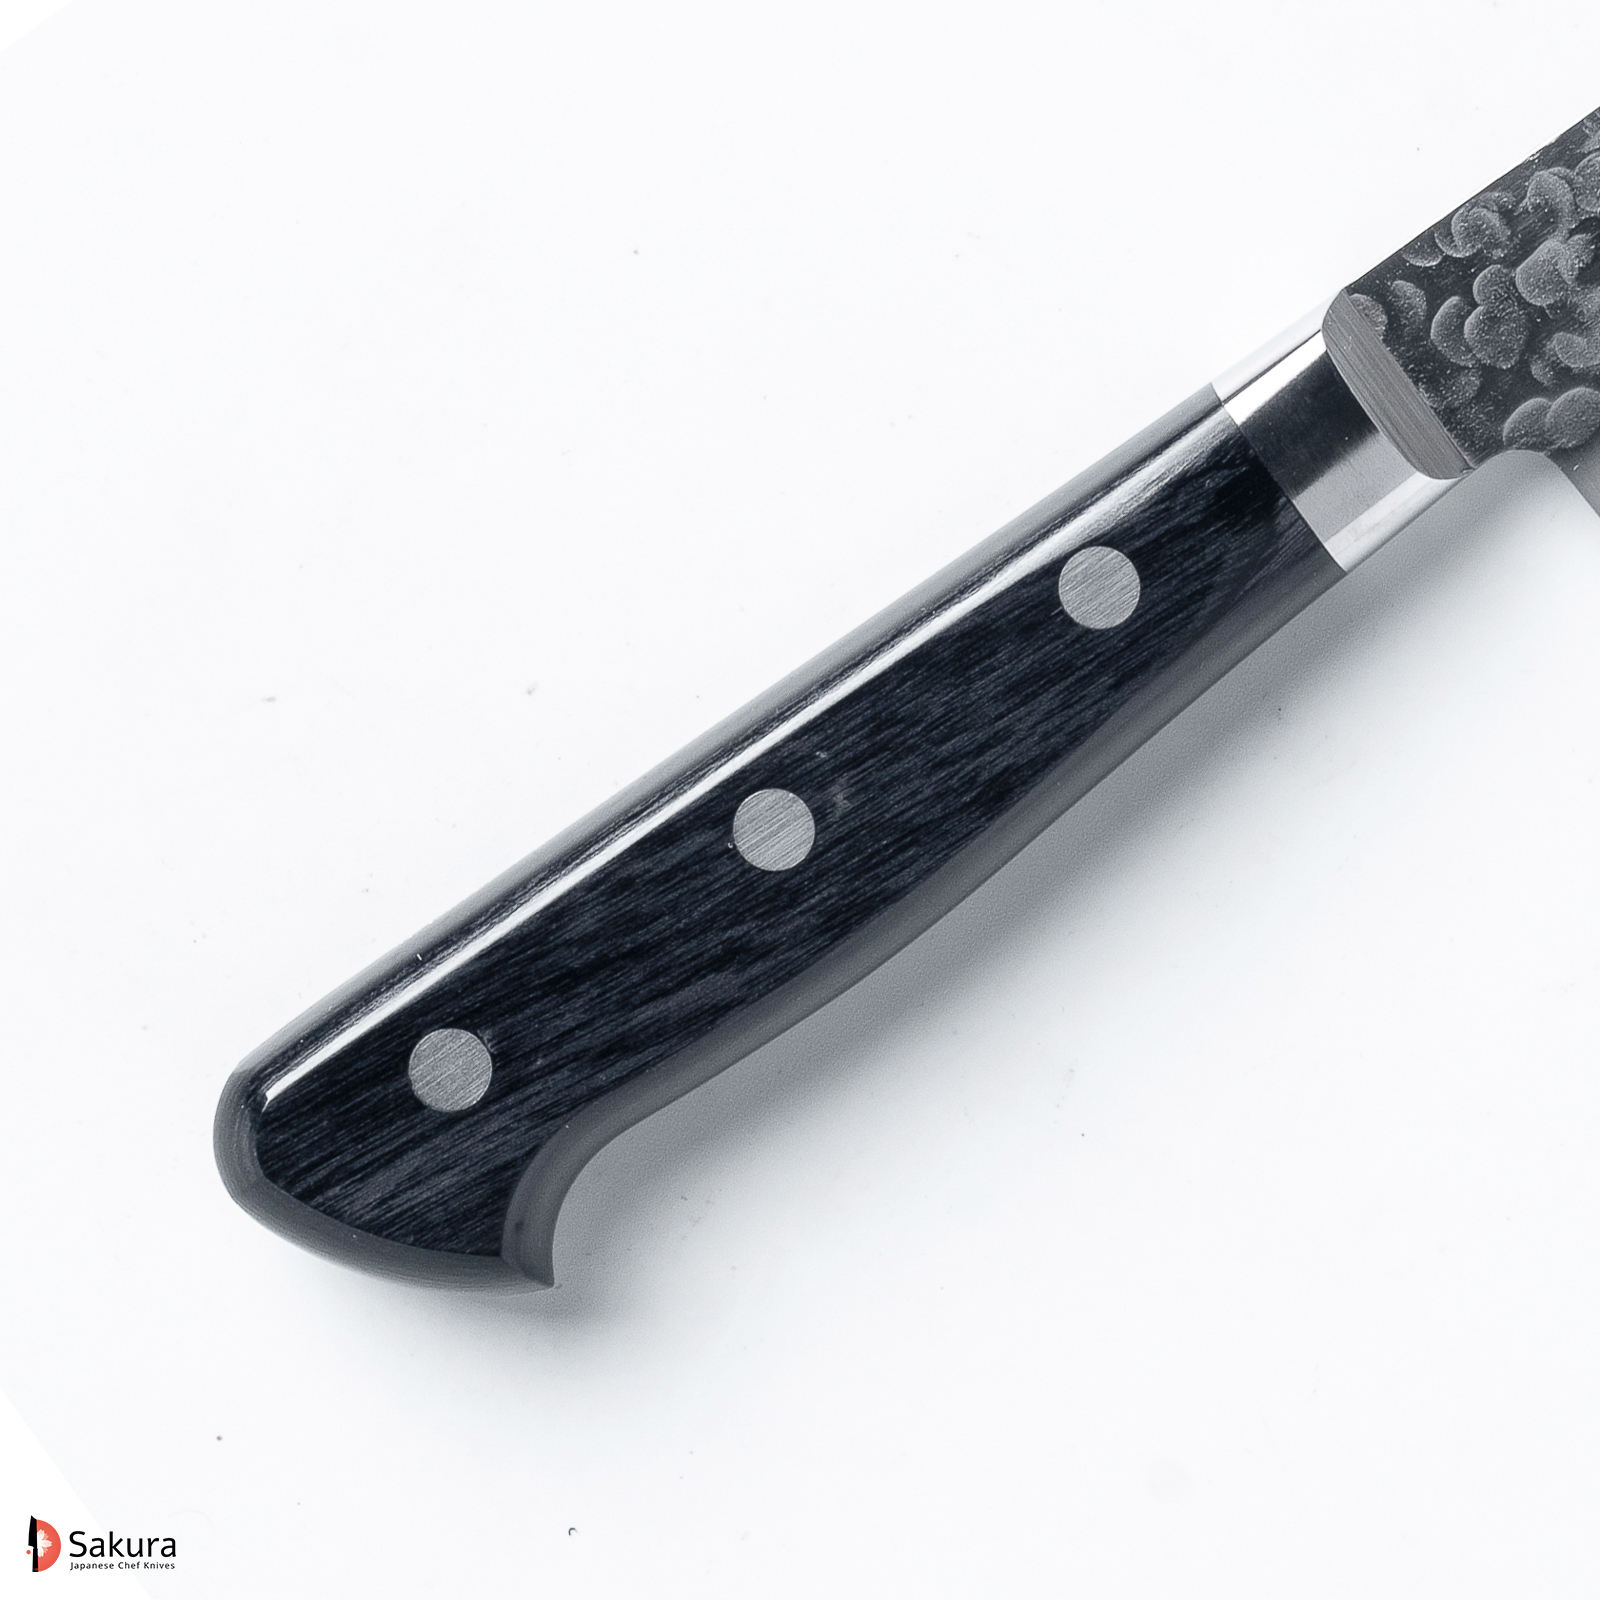 סכין שף רב תכליתית גִּיוּטוֹ 180מ״מ פלדת VG10 Special גימור מט מלוטש עם ריקוע פטיש טאקאמורה יפן מק״ט SKTAKATKMTK252243